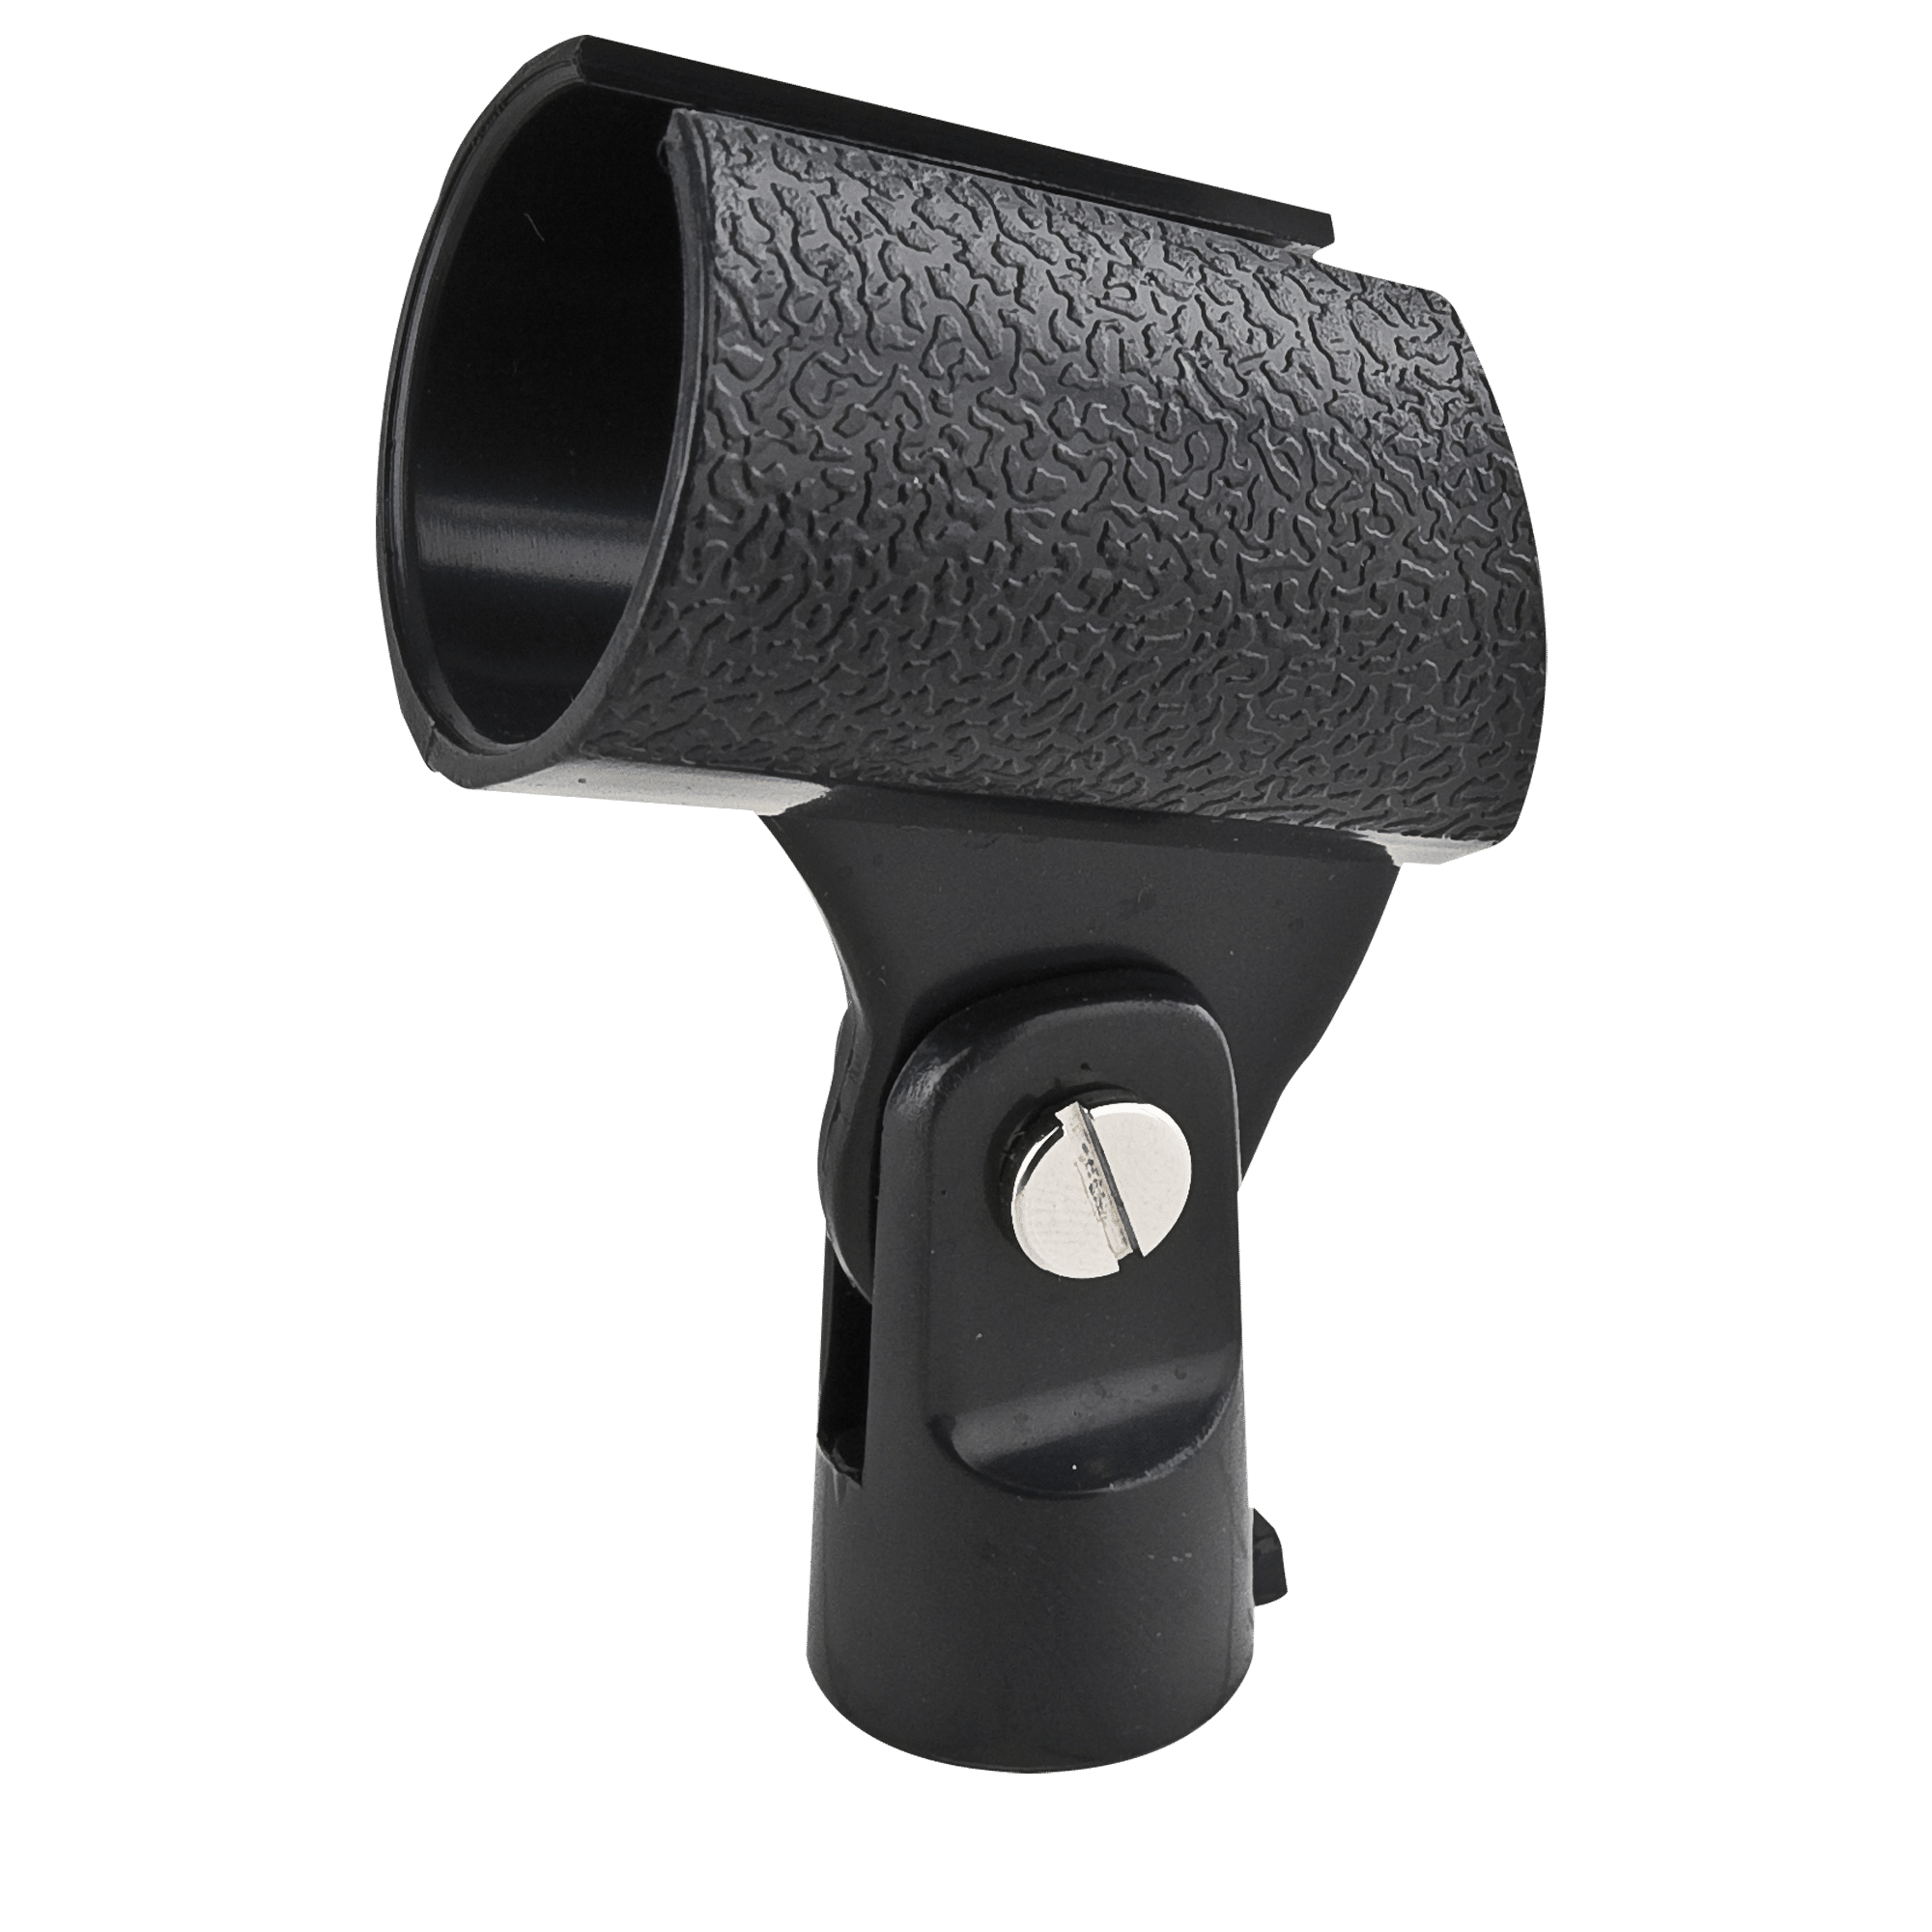 Microphone Holder 28 mm - Onlinediscowinkel.nl